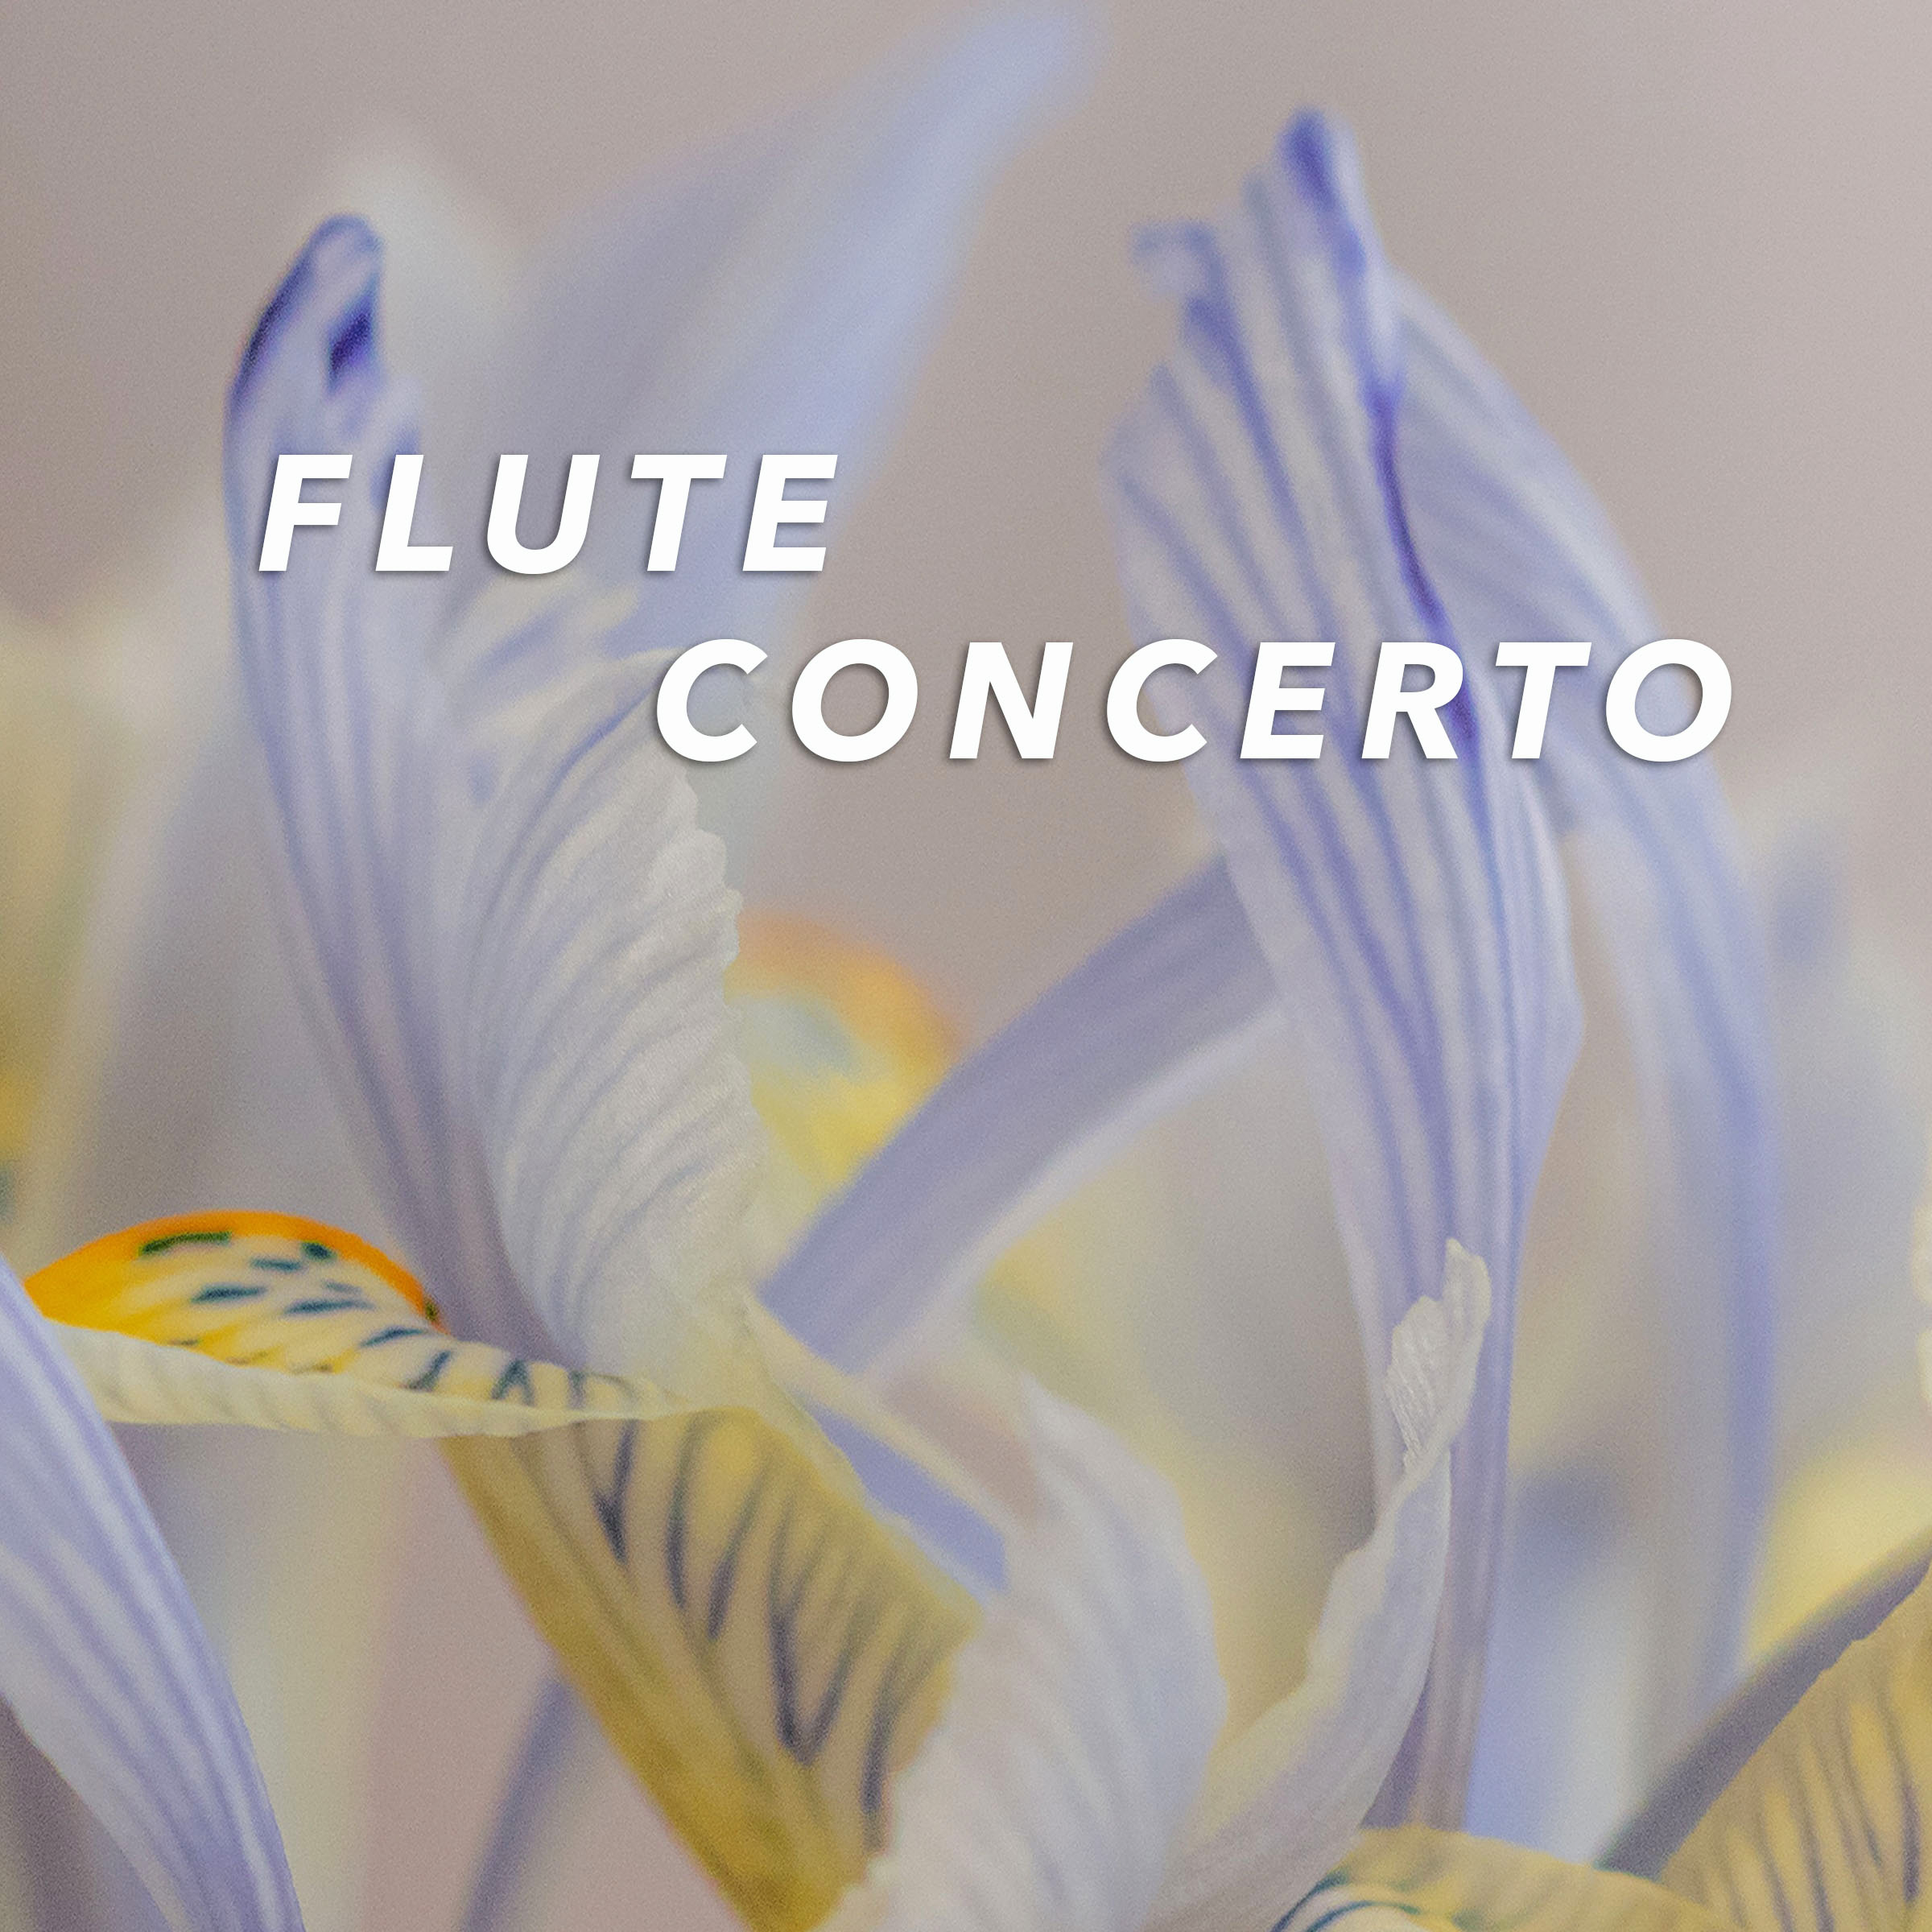 Flute-Concerto-4b-1